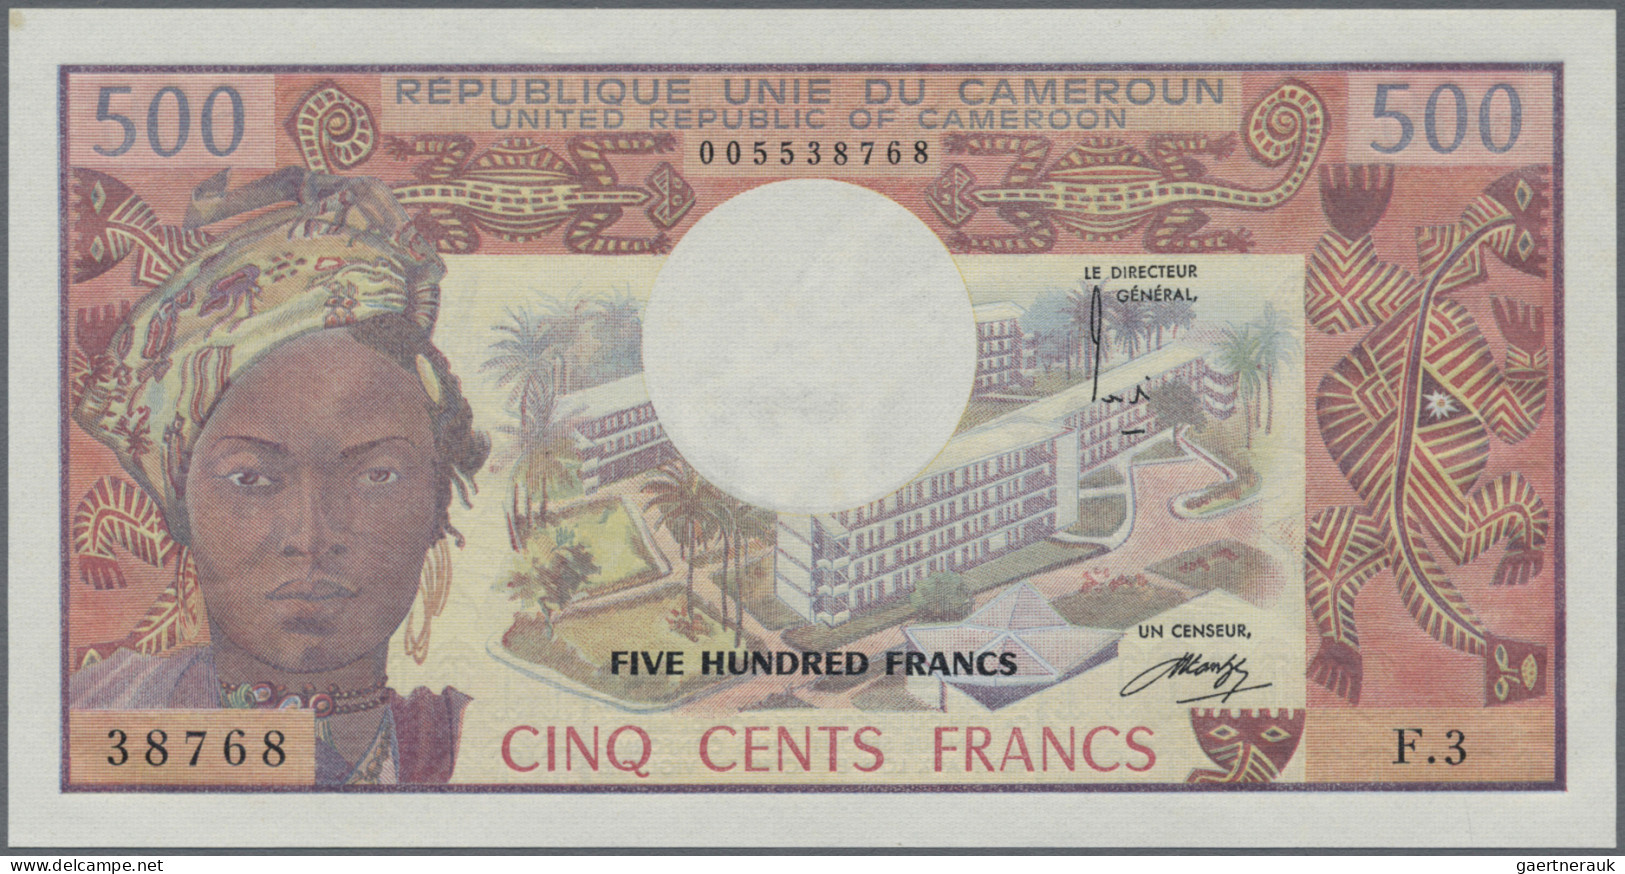 Cameroon: Banque Des États De L'Afrique Centrale - République Unie Du Cameroun, - Kameroen